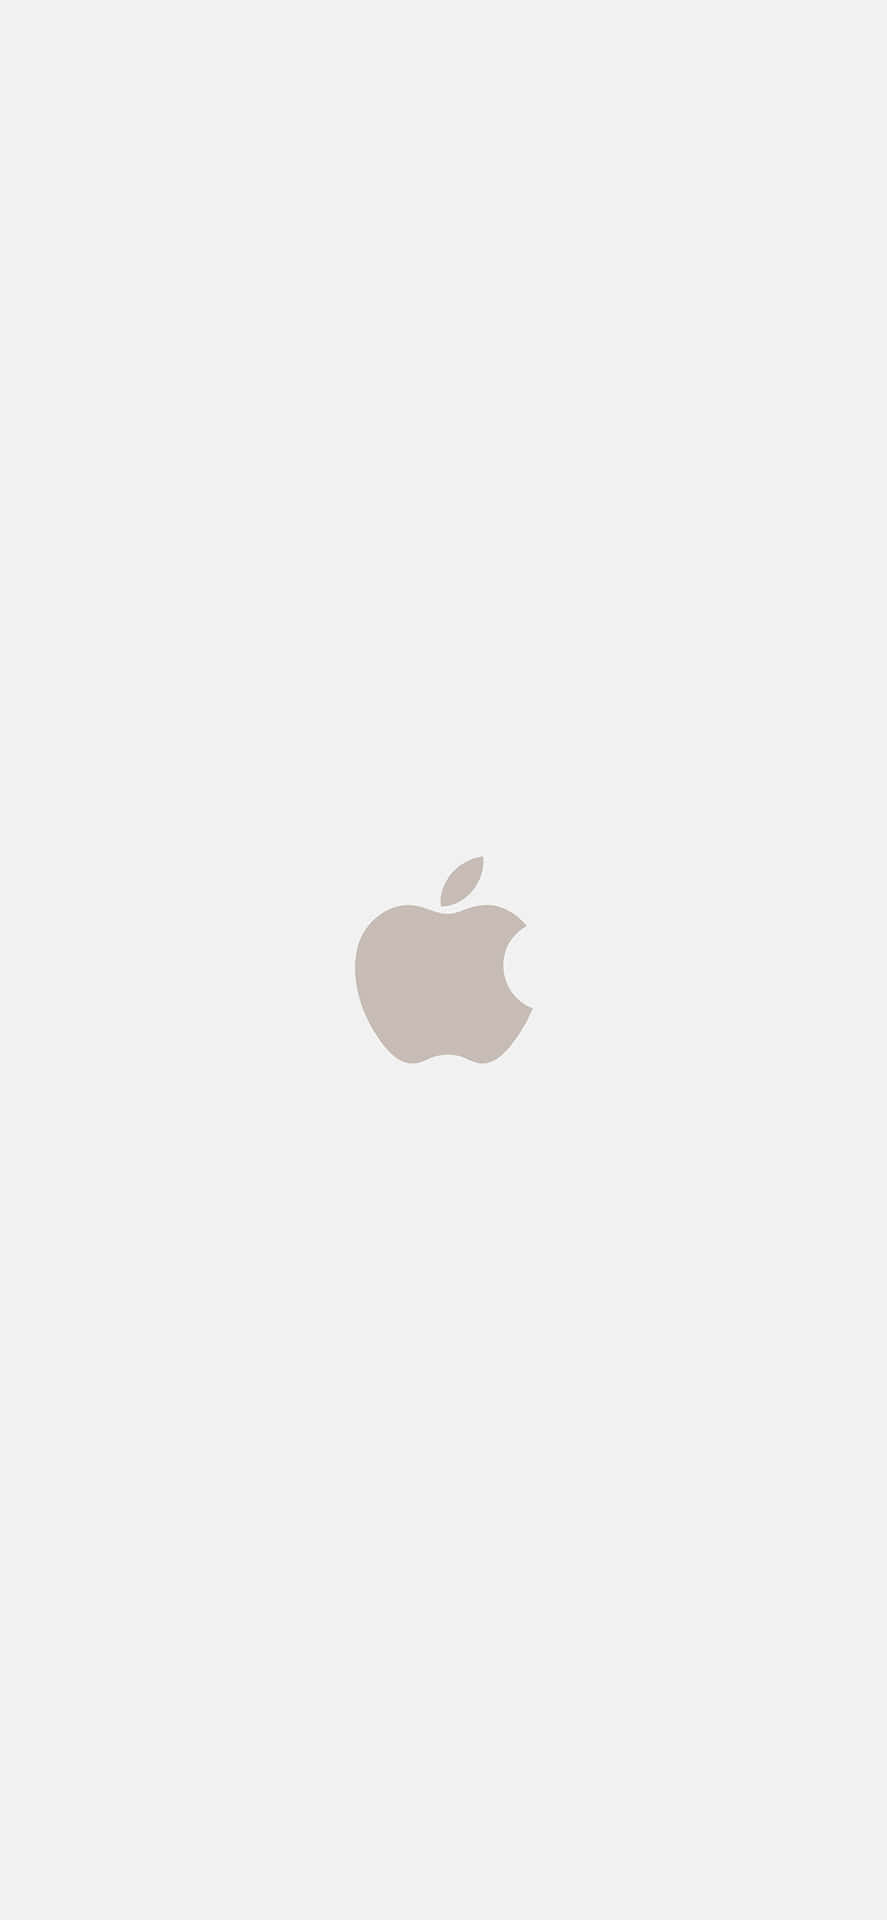 Download Beige Iphone X Apple Logo Wallpaper | Wallpapers.com